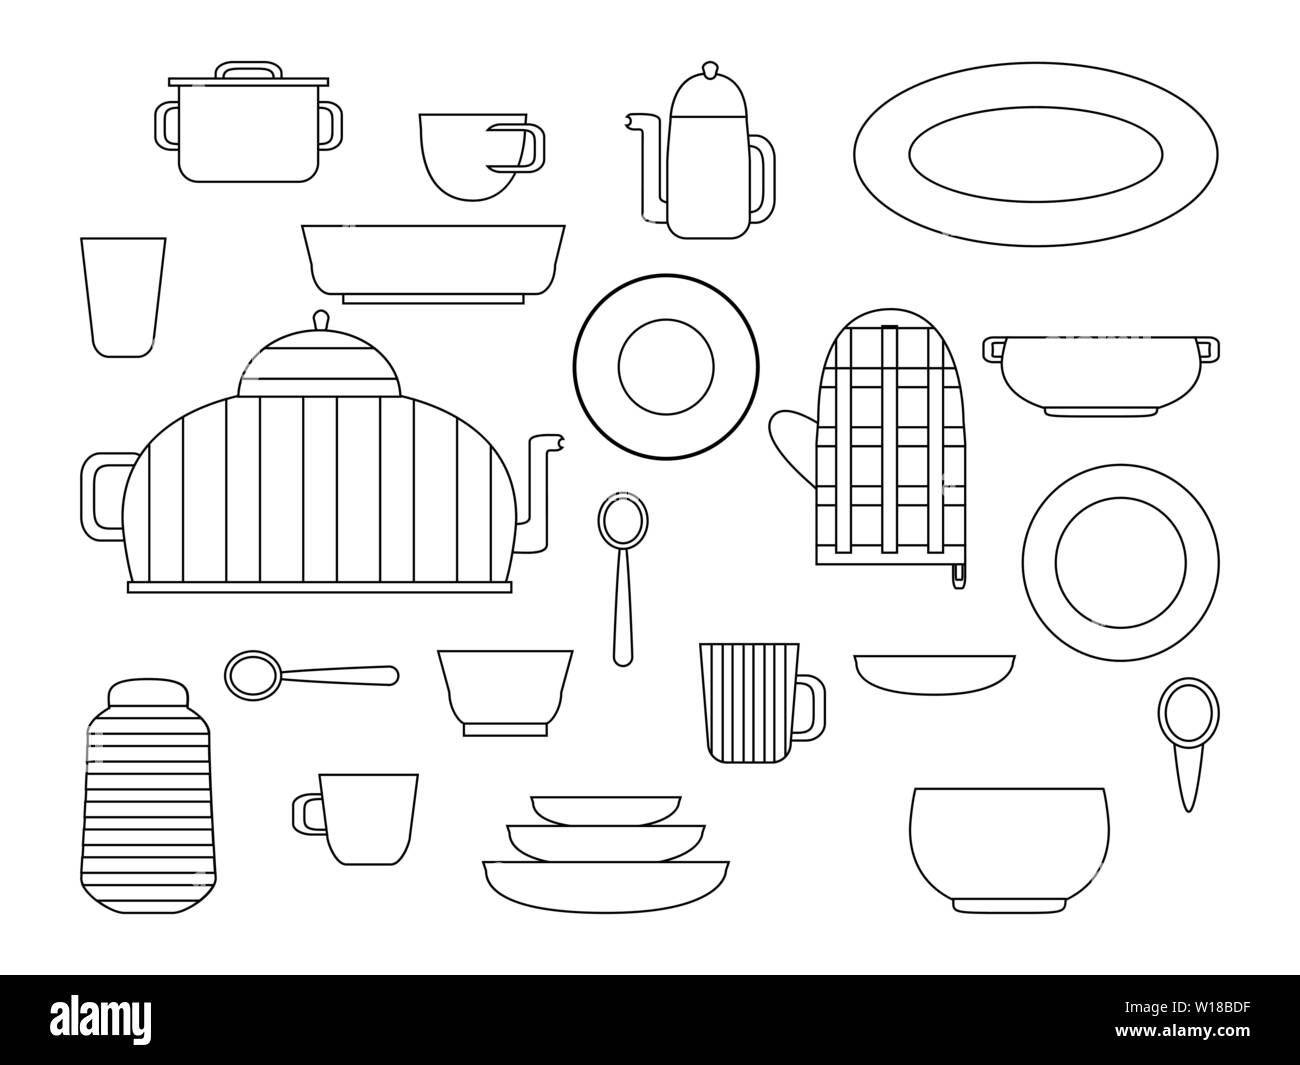 Sammlung von Küchenutensilien und Geschirr Set an Küchen Utensilien für Küche und Gerichte für Tee oder Kaffee trinken Flachbild Vector Illustration, outli Stock Vektor